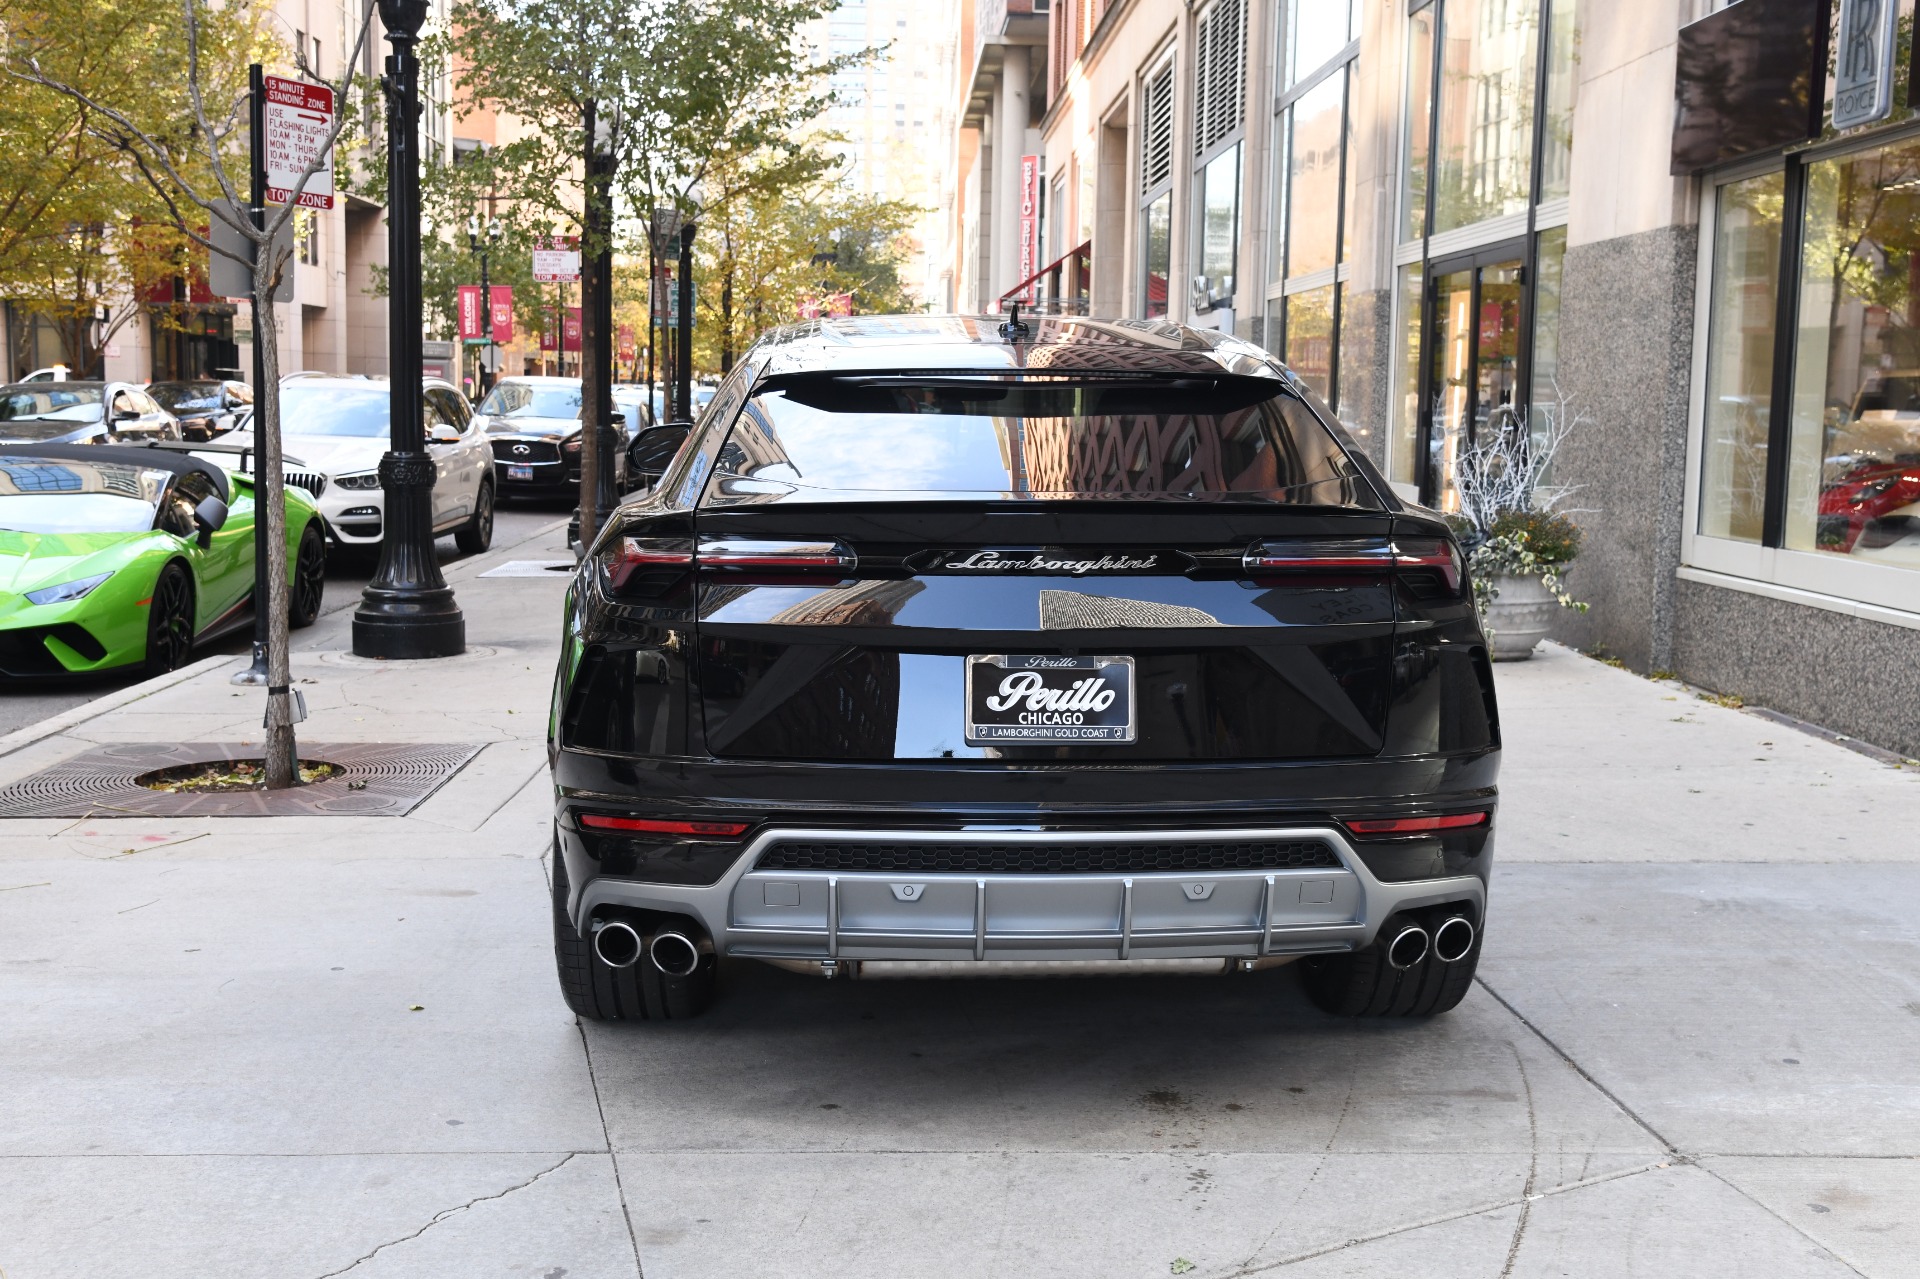 Used 2020 Lamborghini Urus  | Chicago, IL